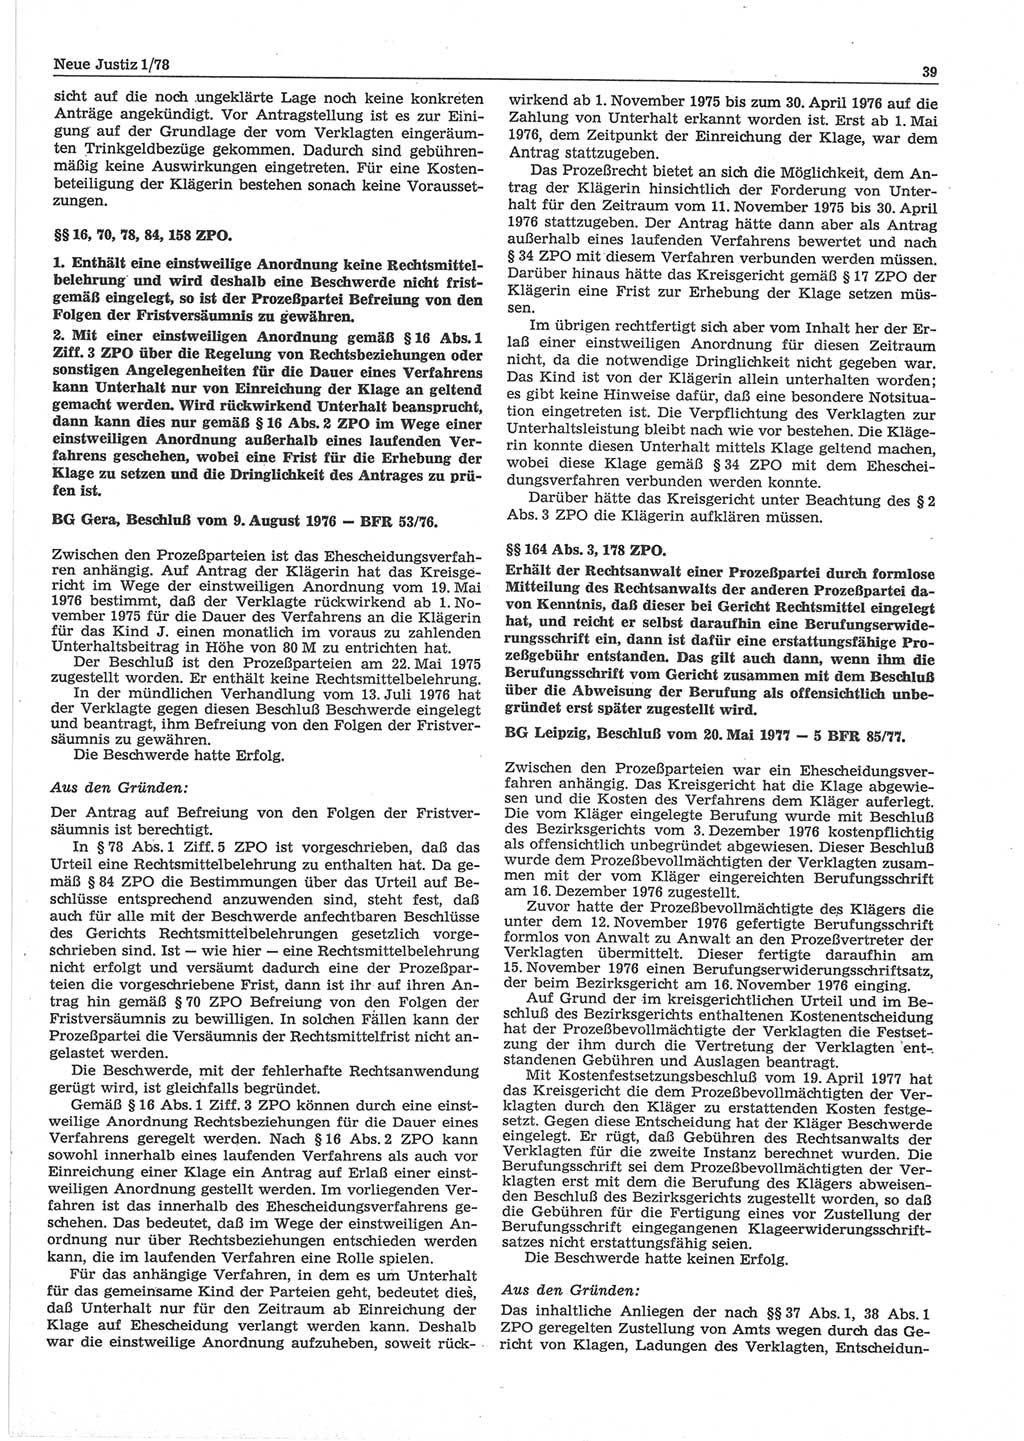 Neue Justiz (NJ), Zeitschrift für sozialistisches Recht und Gesetzlichkeit [Deutsche Demokratische Republik (DDR)], 32. Jahrgang 1978, Seite 39 (NJ DDR 1978, S. 39)